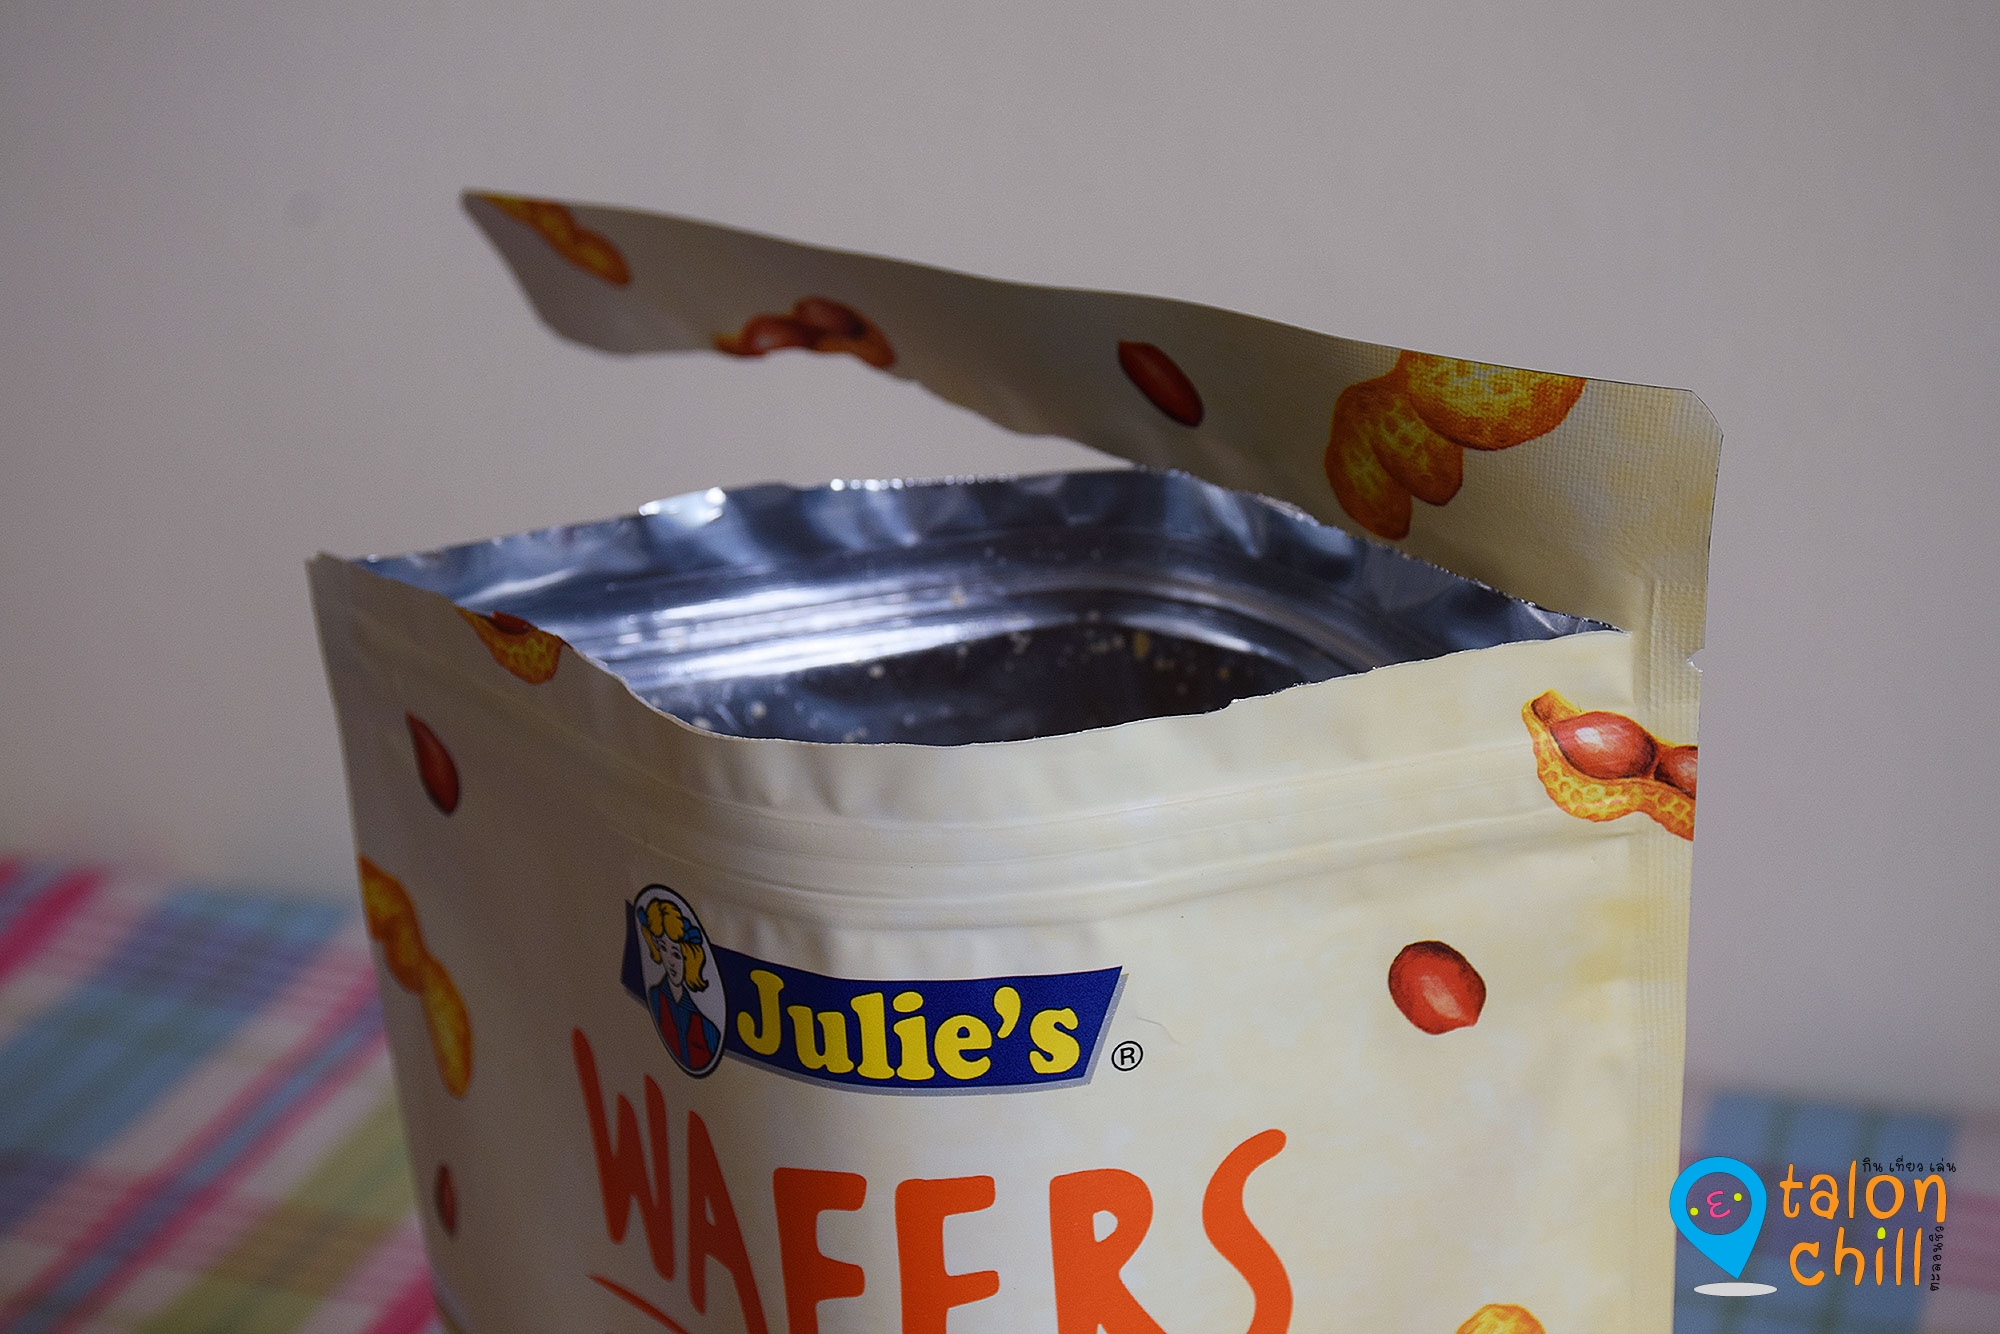 [รีวิว] Julie's Wafers Peanut Butter Cream เวเฟอร์ พีนัท บัตเตอร์ ครีม (ตรา จูลี่ส์)